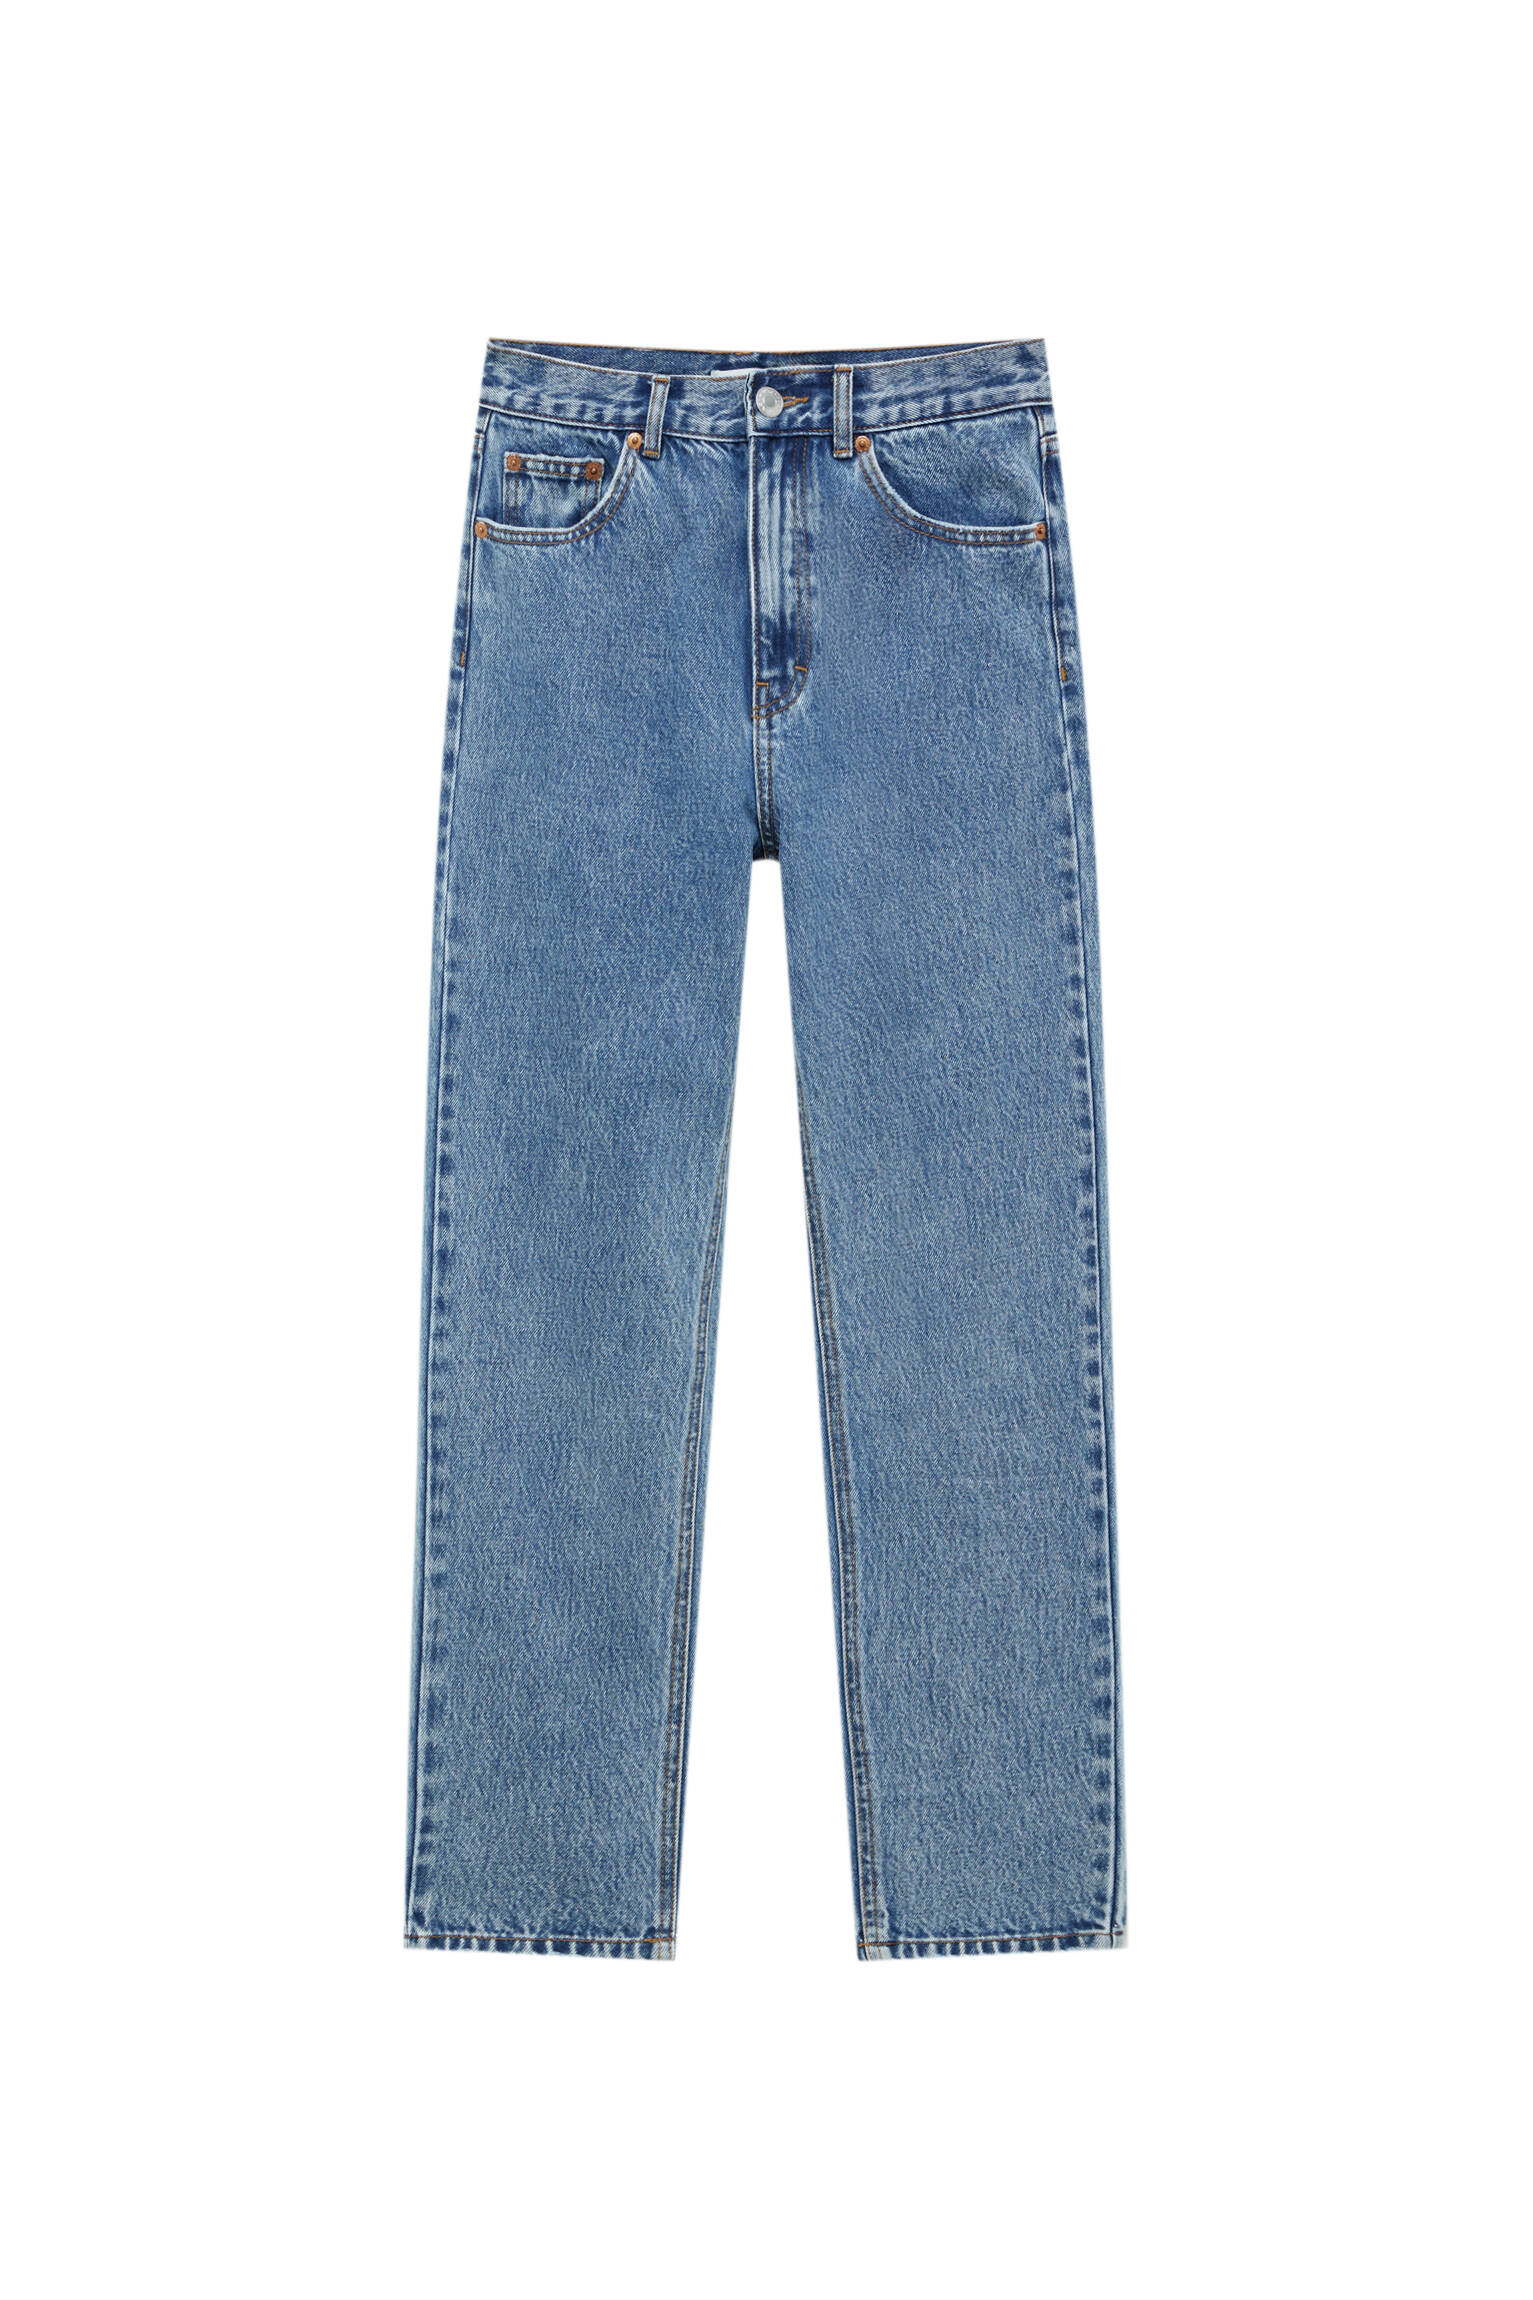 ВЫЦВЕТШИЙ СИНИЙ Базовые джинсы mom fit - органический хлопок (не менее 50%) Pull & Bear